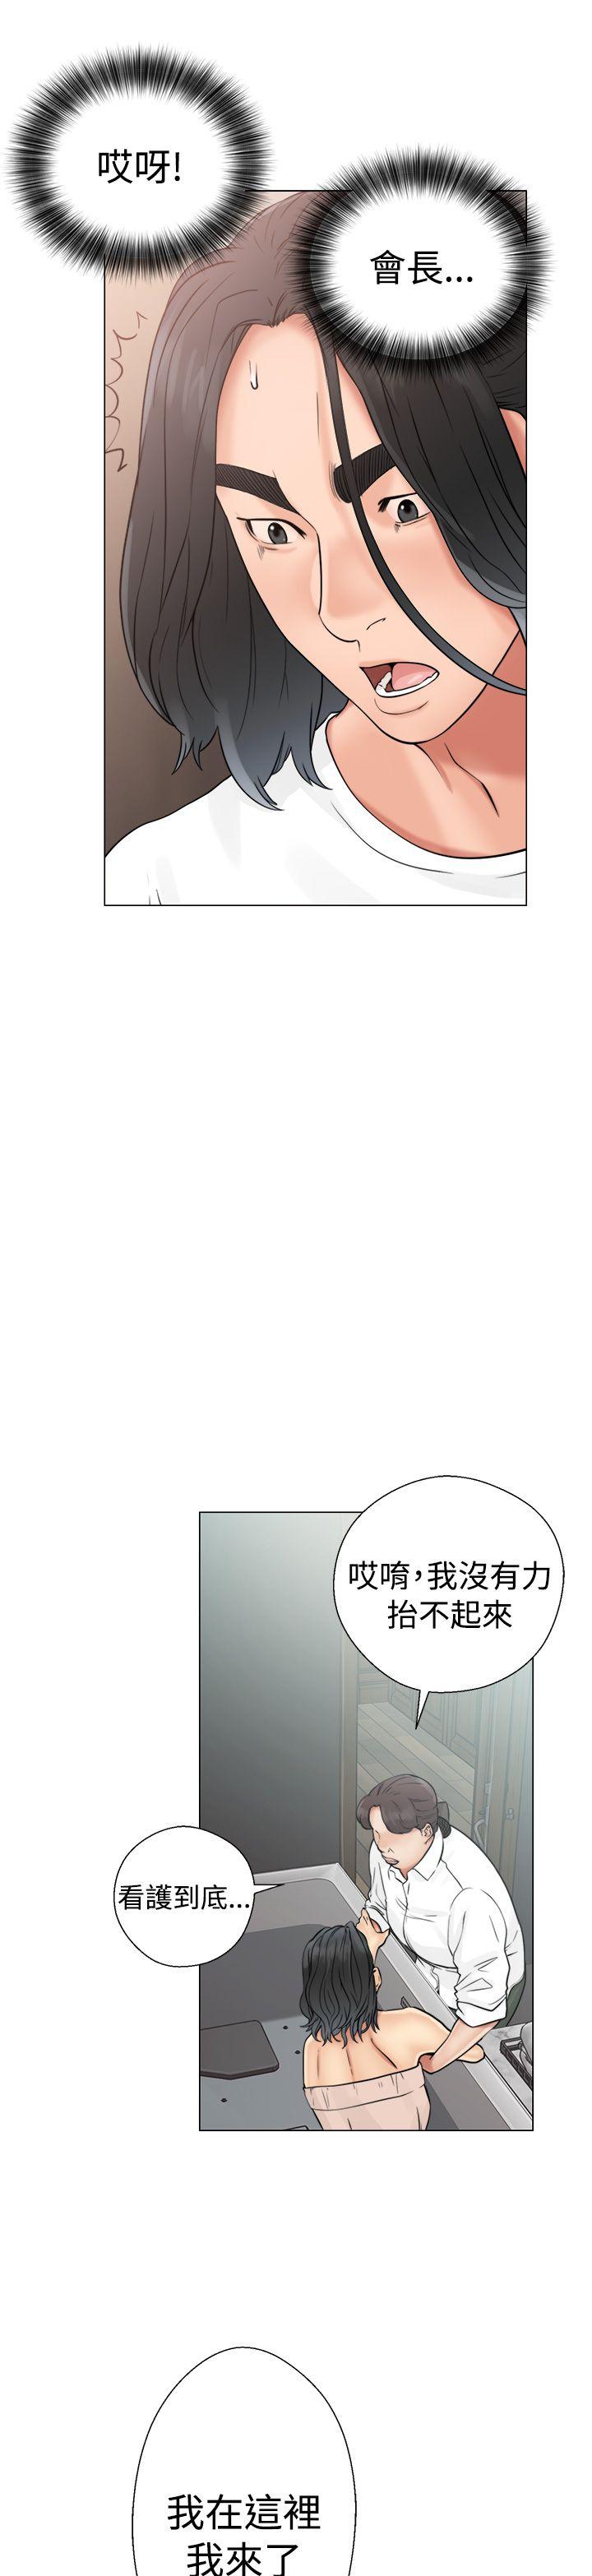 解禁:初始的快感  第19话 漫画图片3.jpg